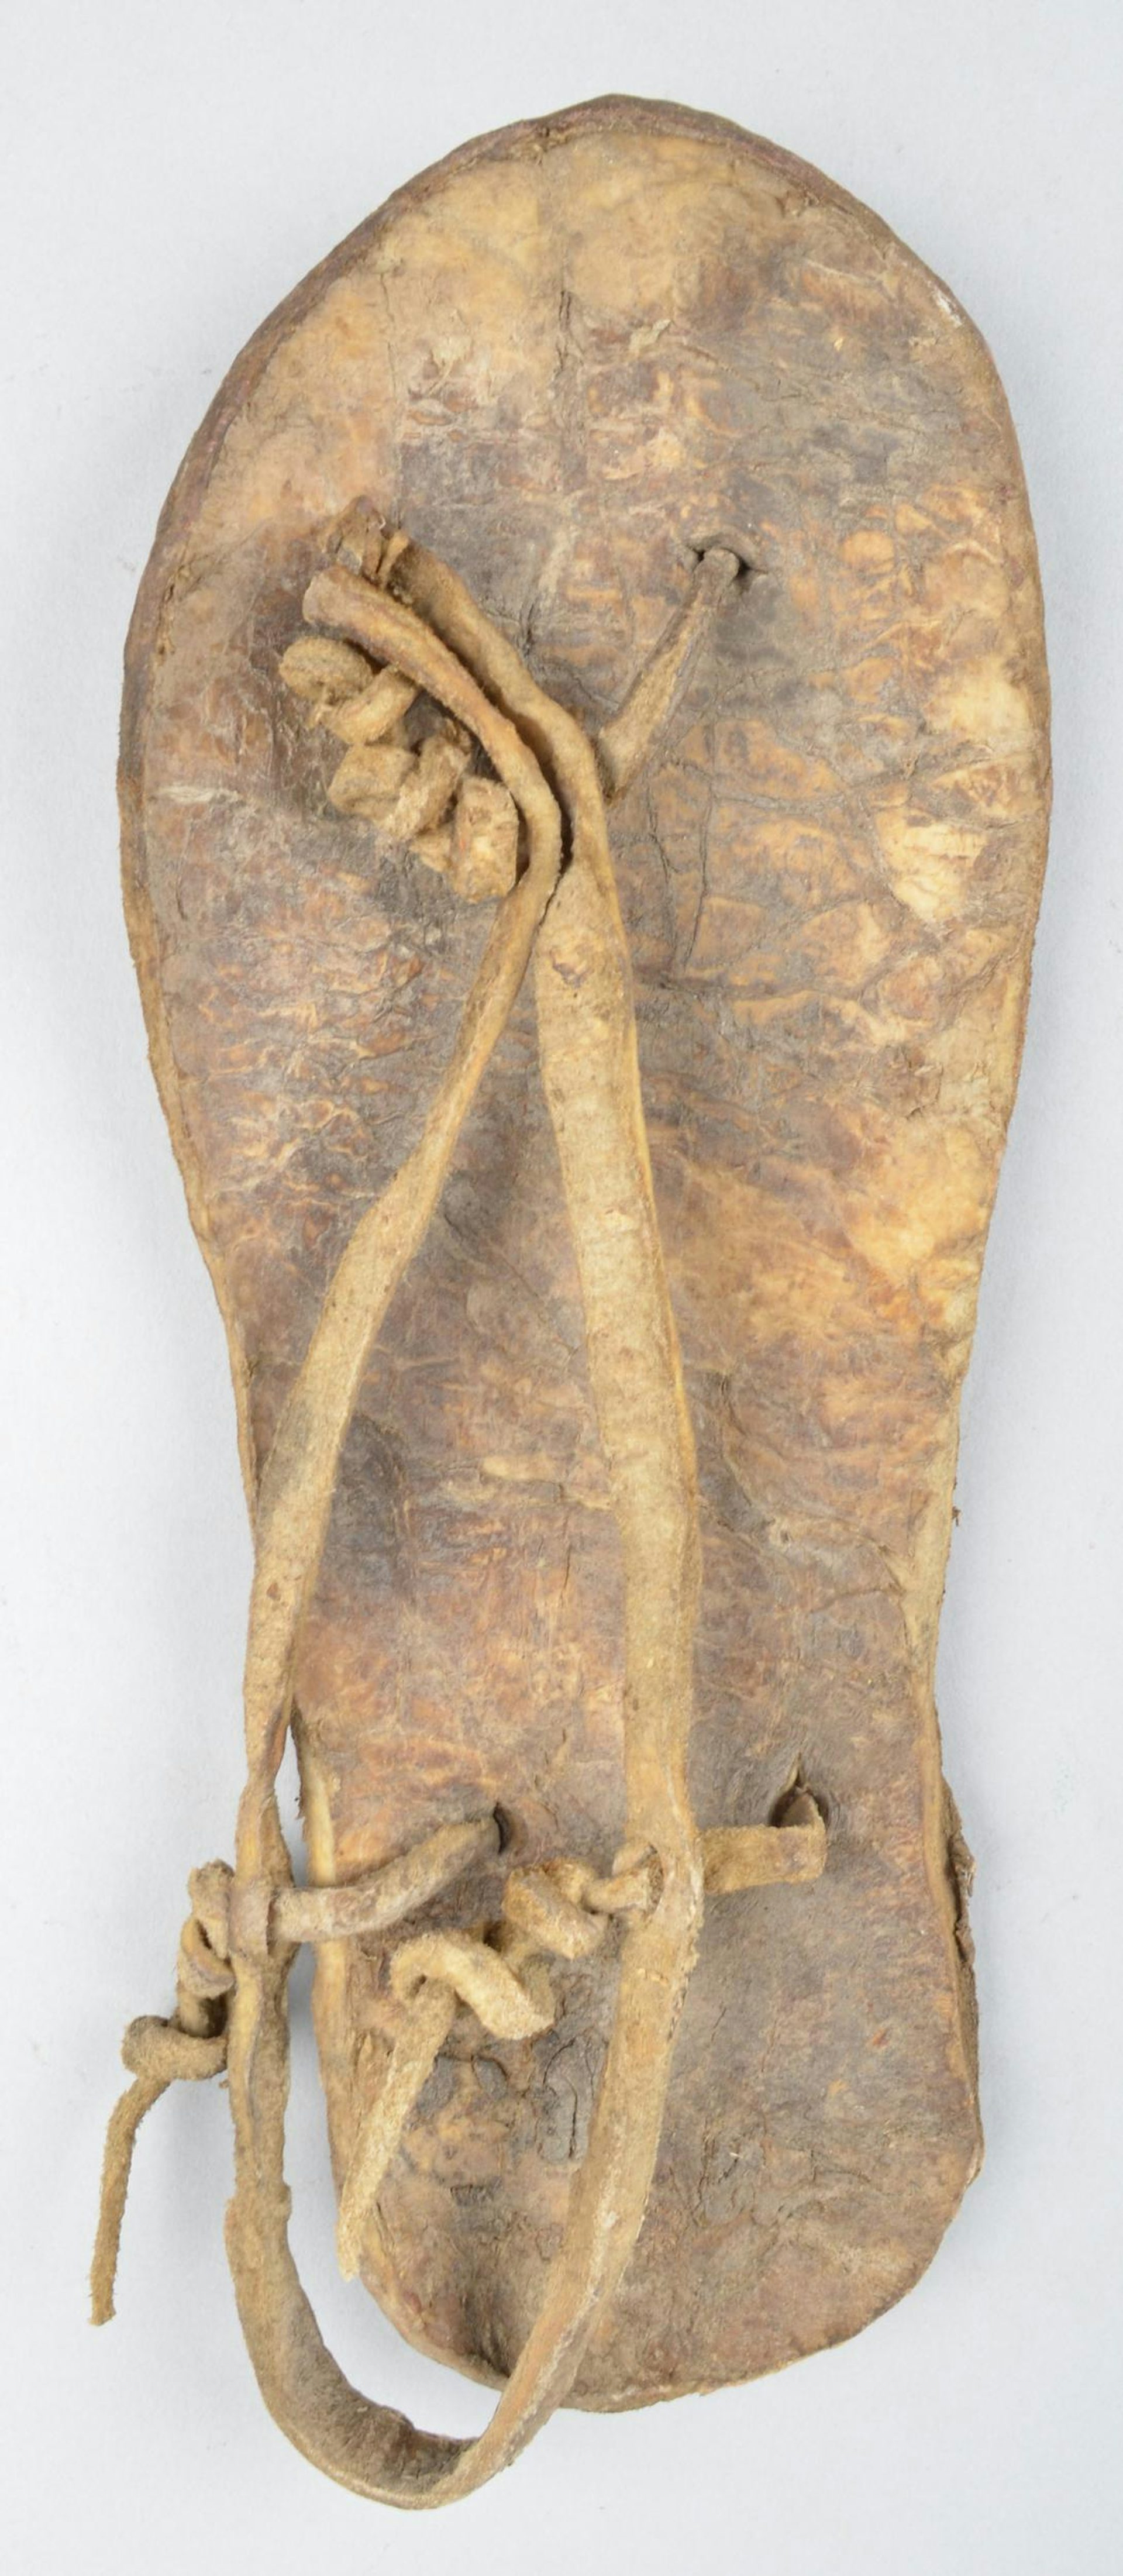 Left foot sandal made of hide (gemsbuck) by San artist (n.d).